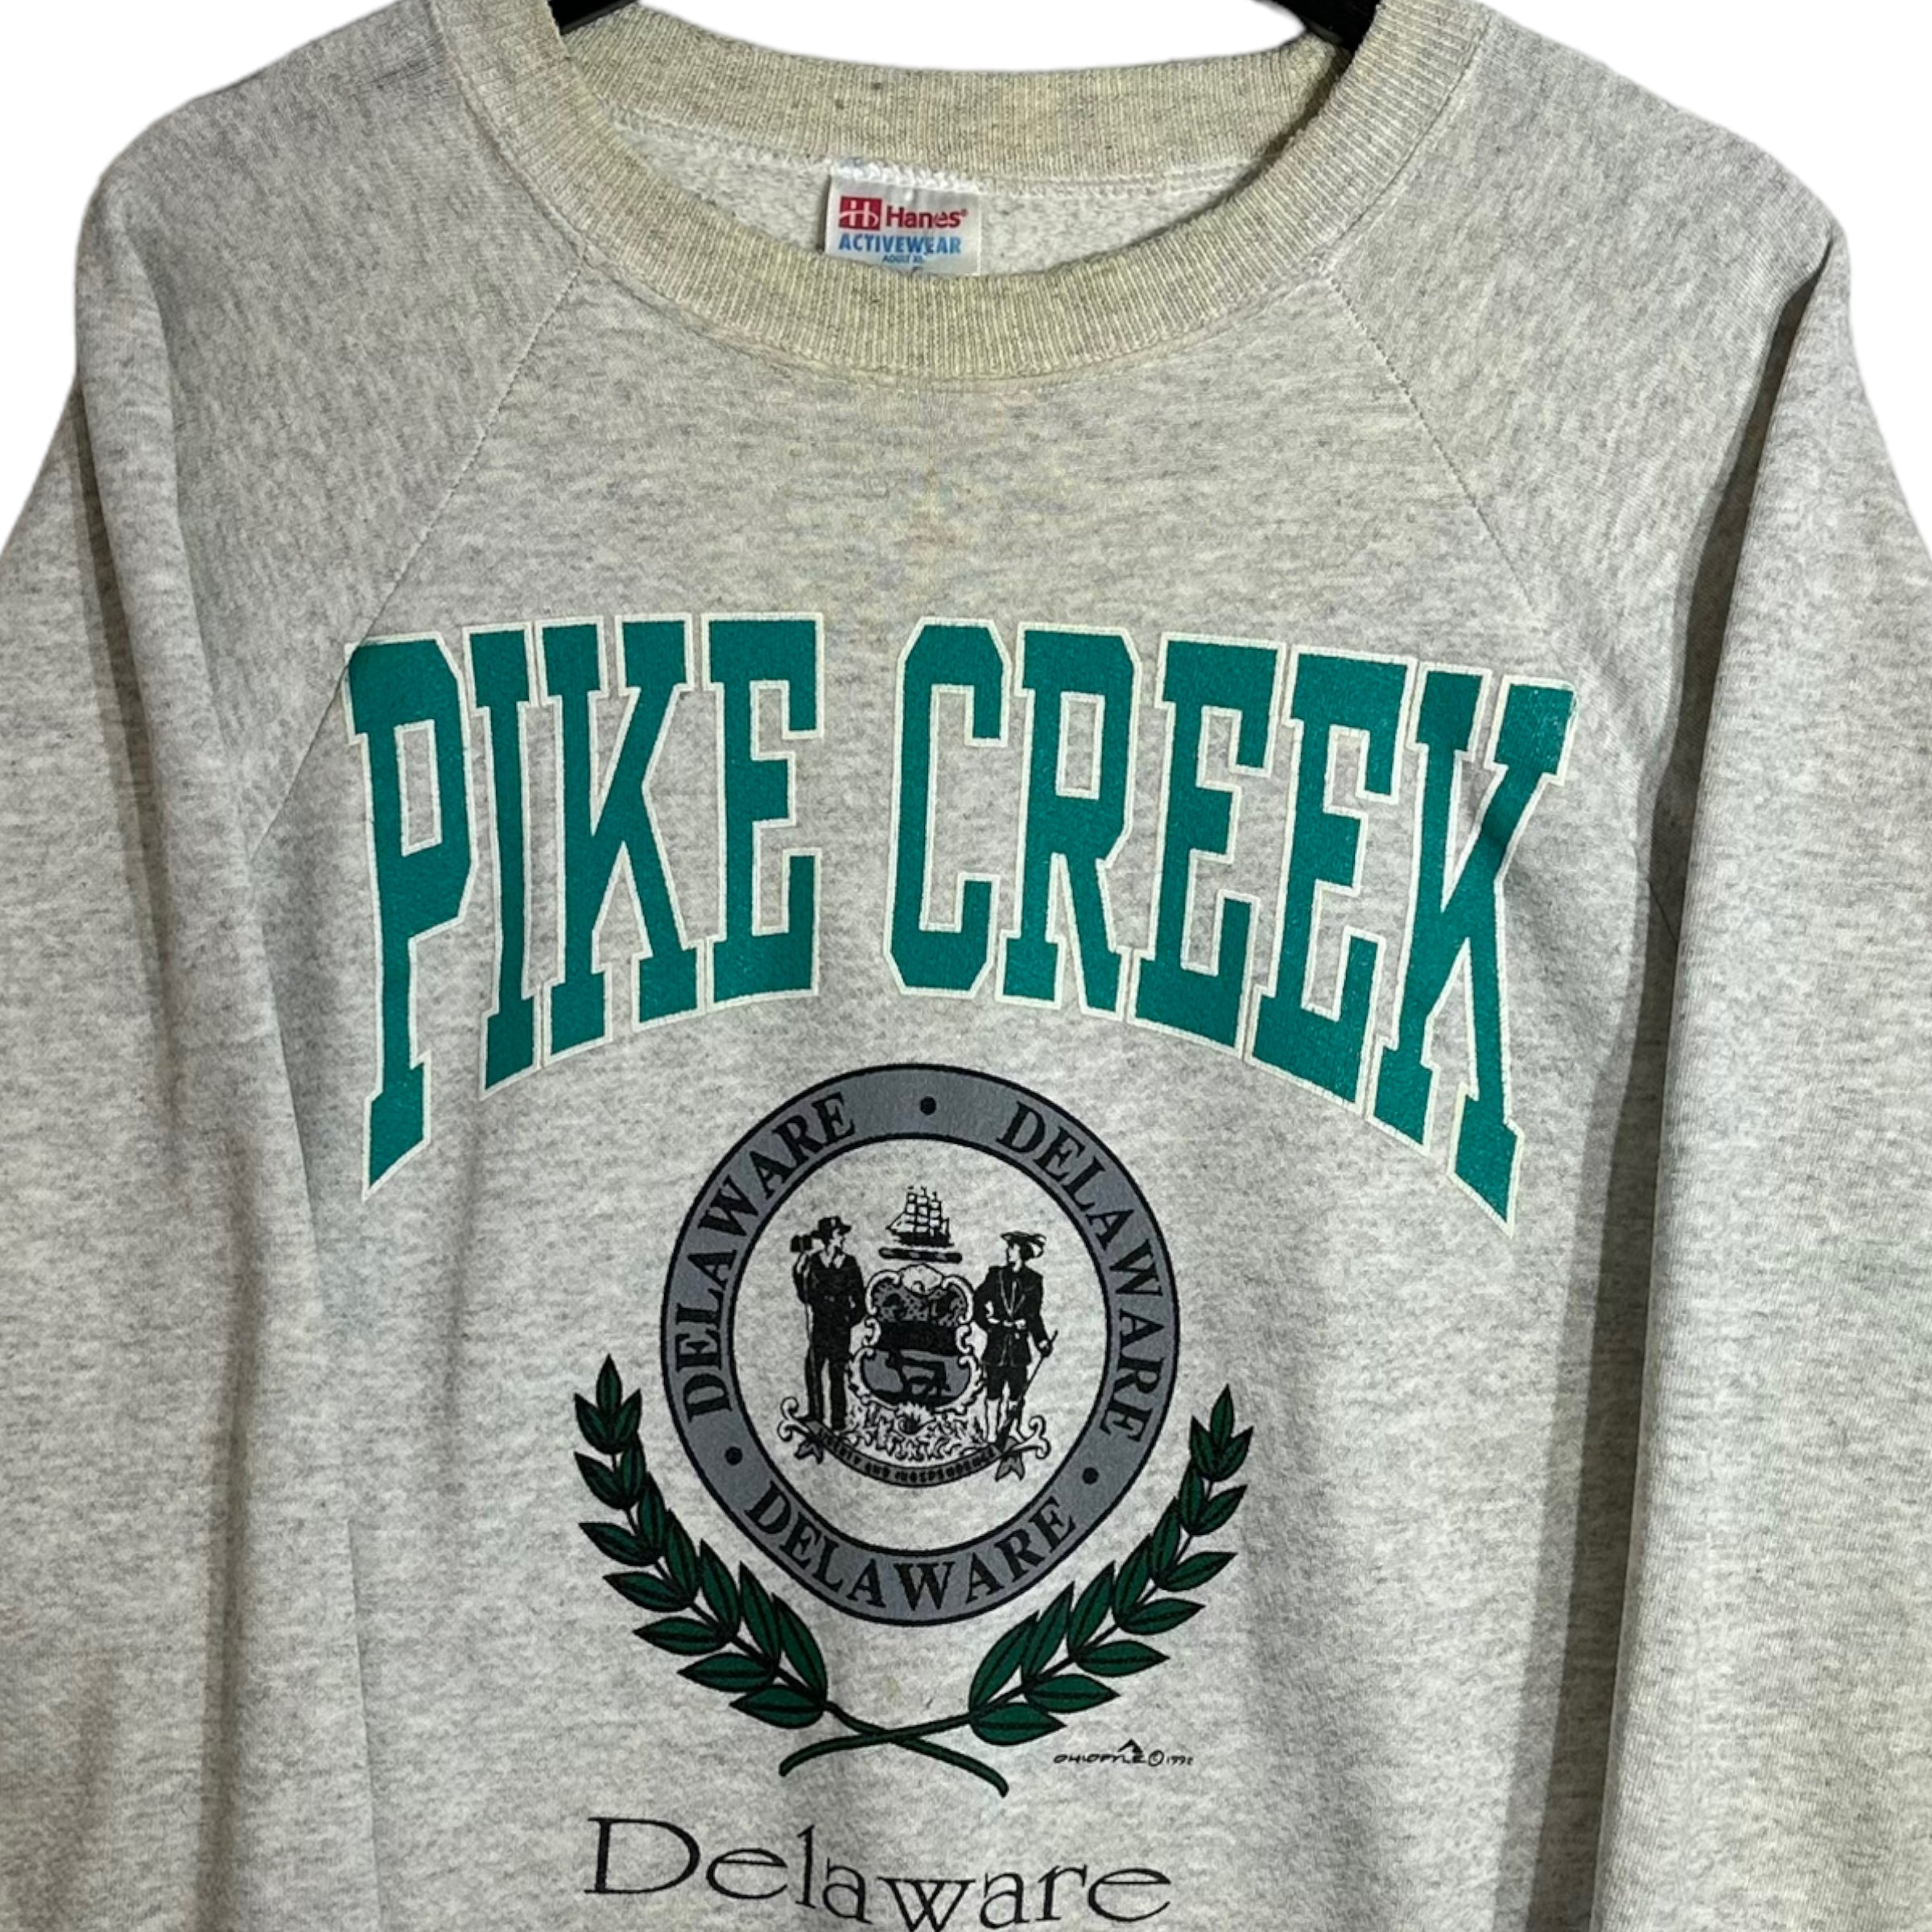 Vintage Pine Creek Delaware Crewneck